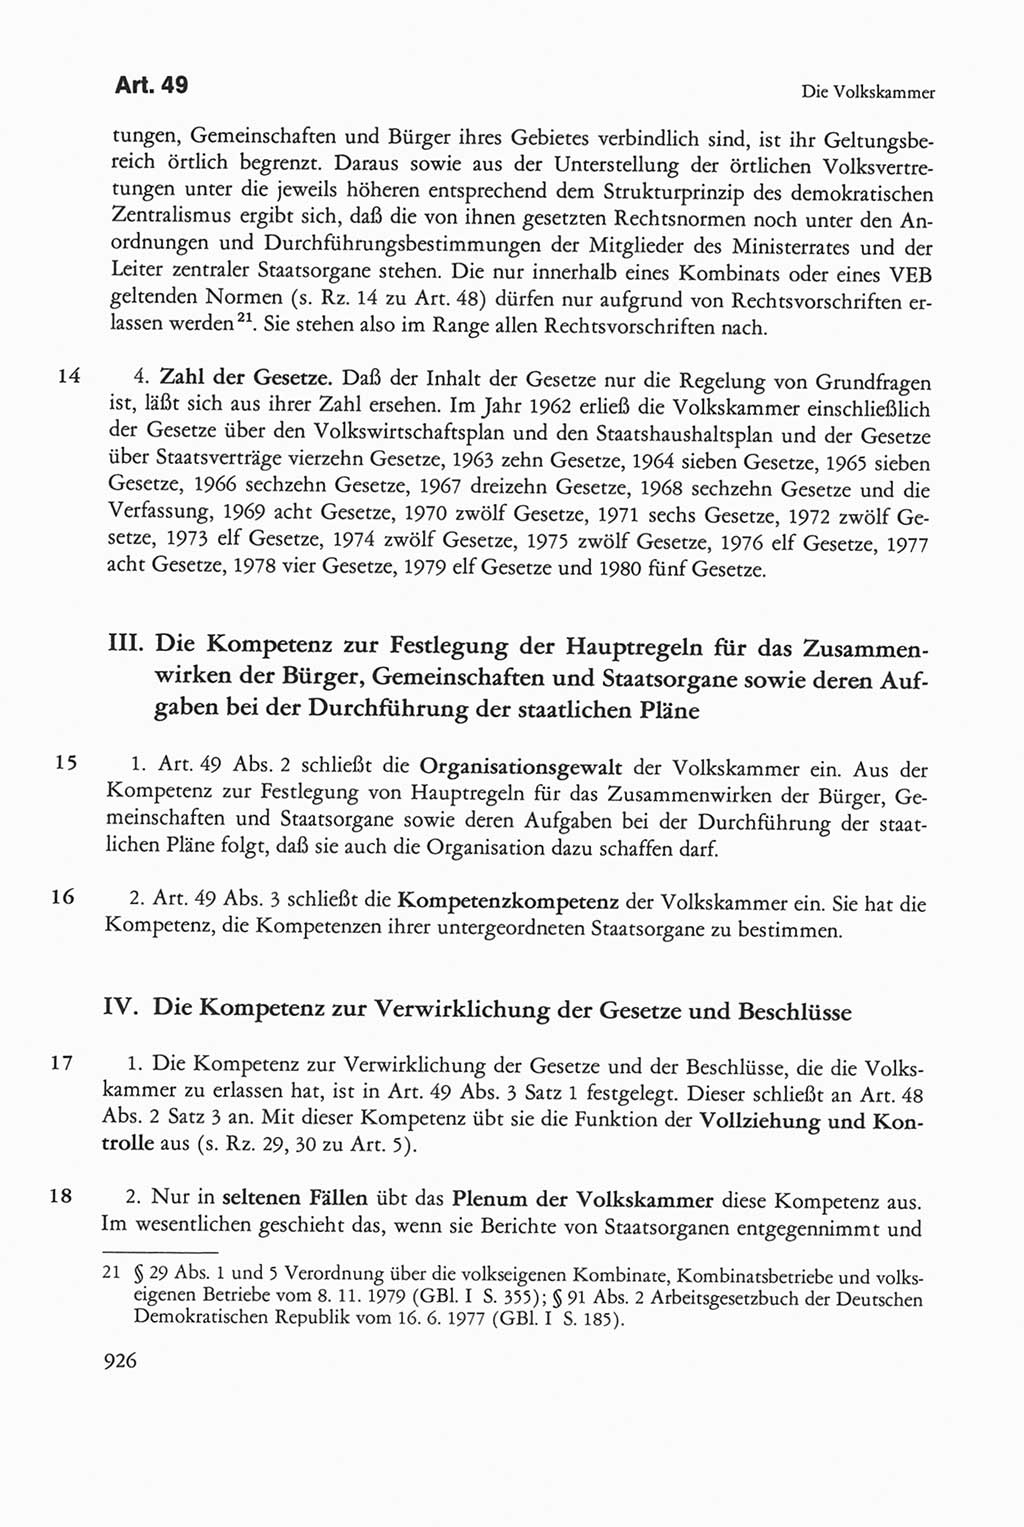 Die sozialistische Verfassung der Deutschen Demokratischen Republik (DDR), Kommentar mit einem Nachtrag 1997, Seite 926 (Soz. Verf. DDR Komm. Nachtr. 1997, S. 926)